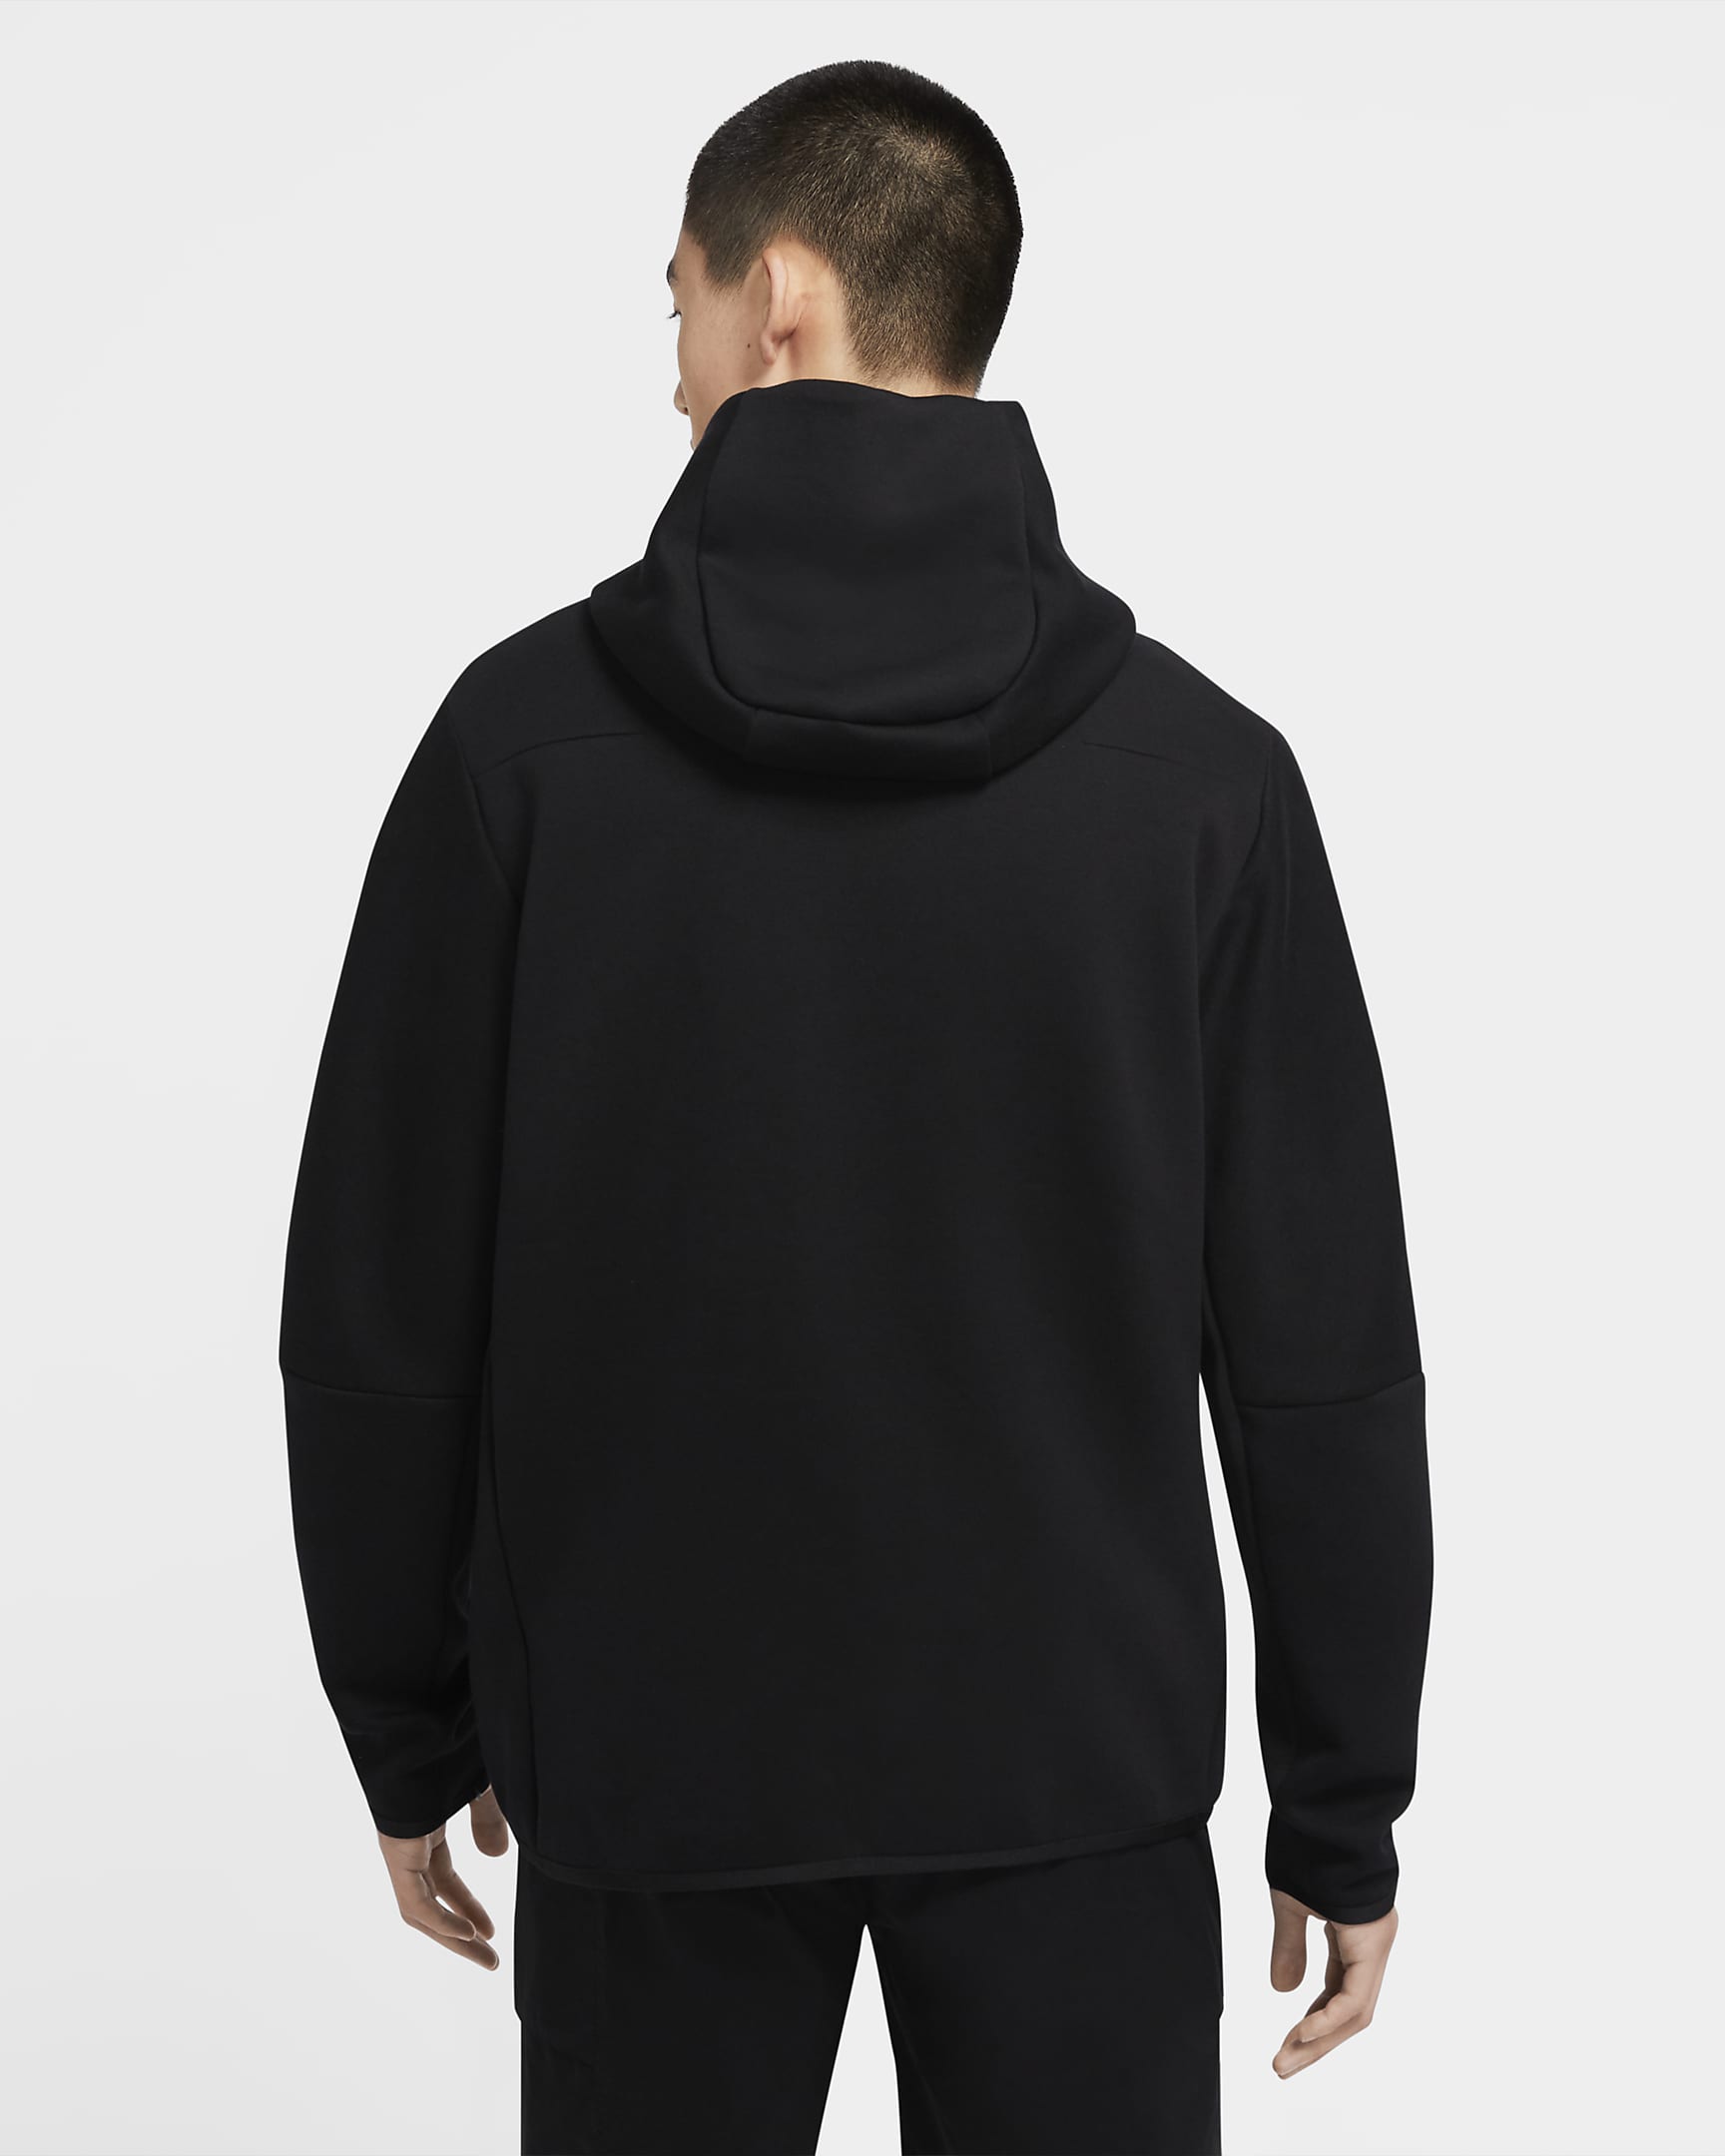 Nike Sportswear Tech Fleece Men's Full-Zip Hoodie - Black/Black